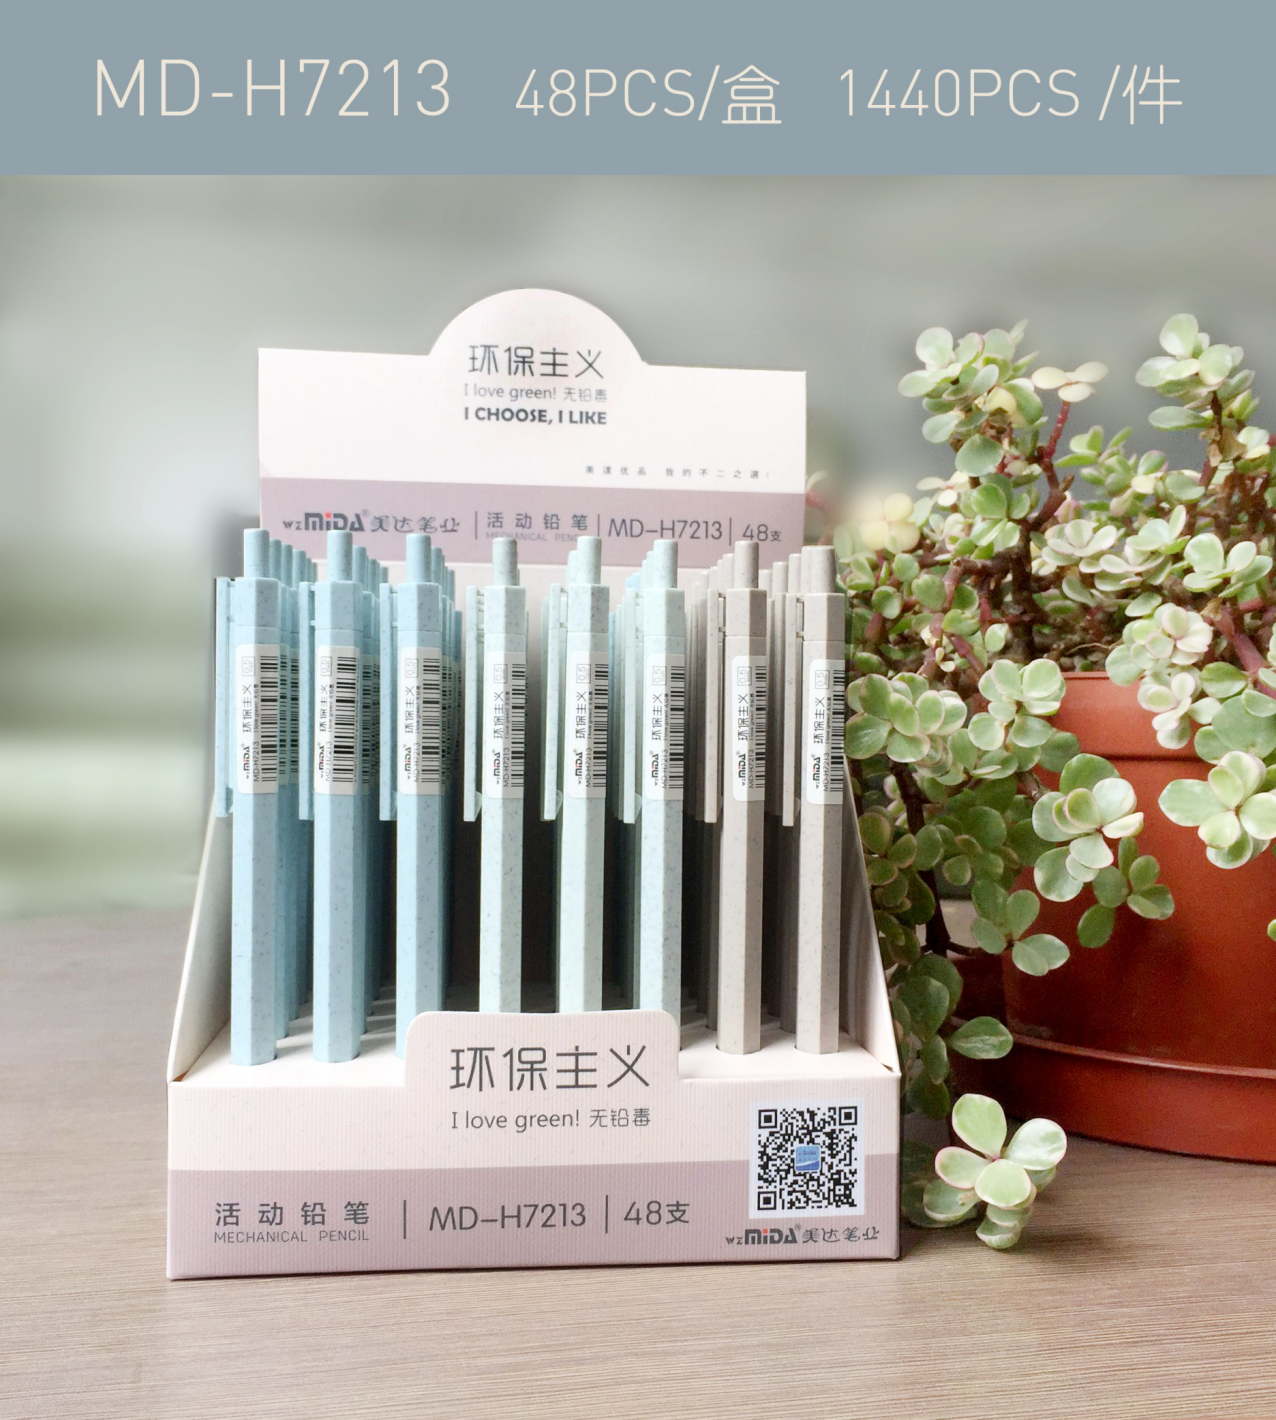 美达塑料自动铅笔系列MDH7213工厂自营店铺